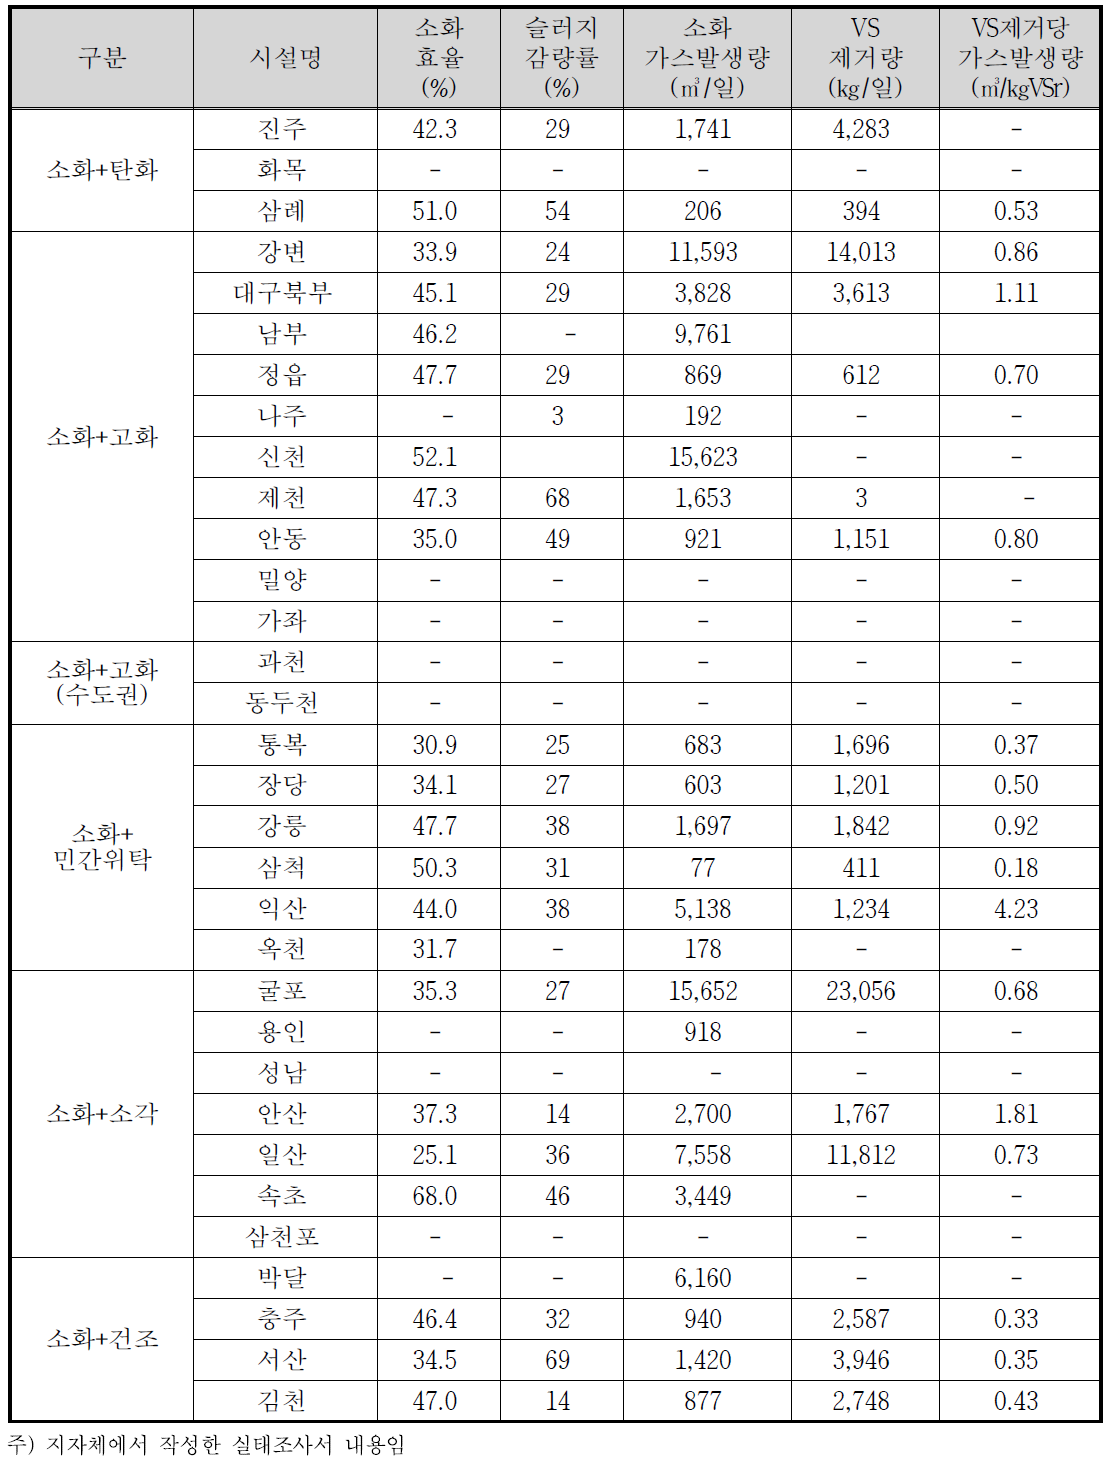 하수처리시설별 소화조 운영현황(2010년~2012년 평균)